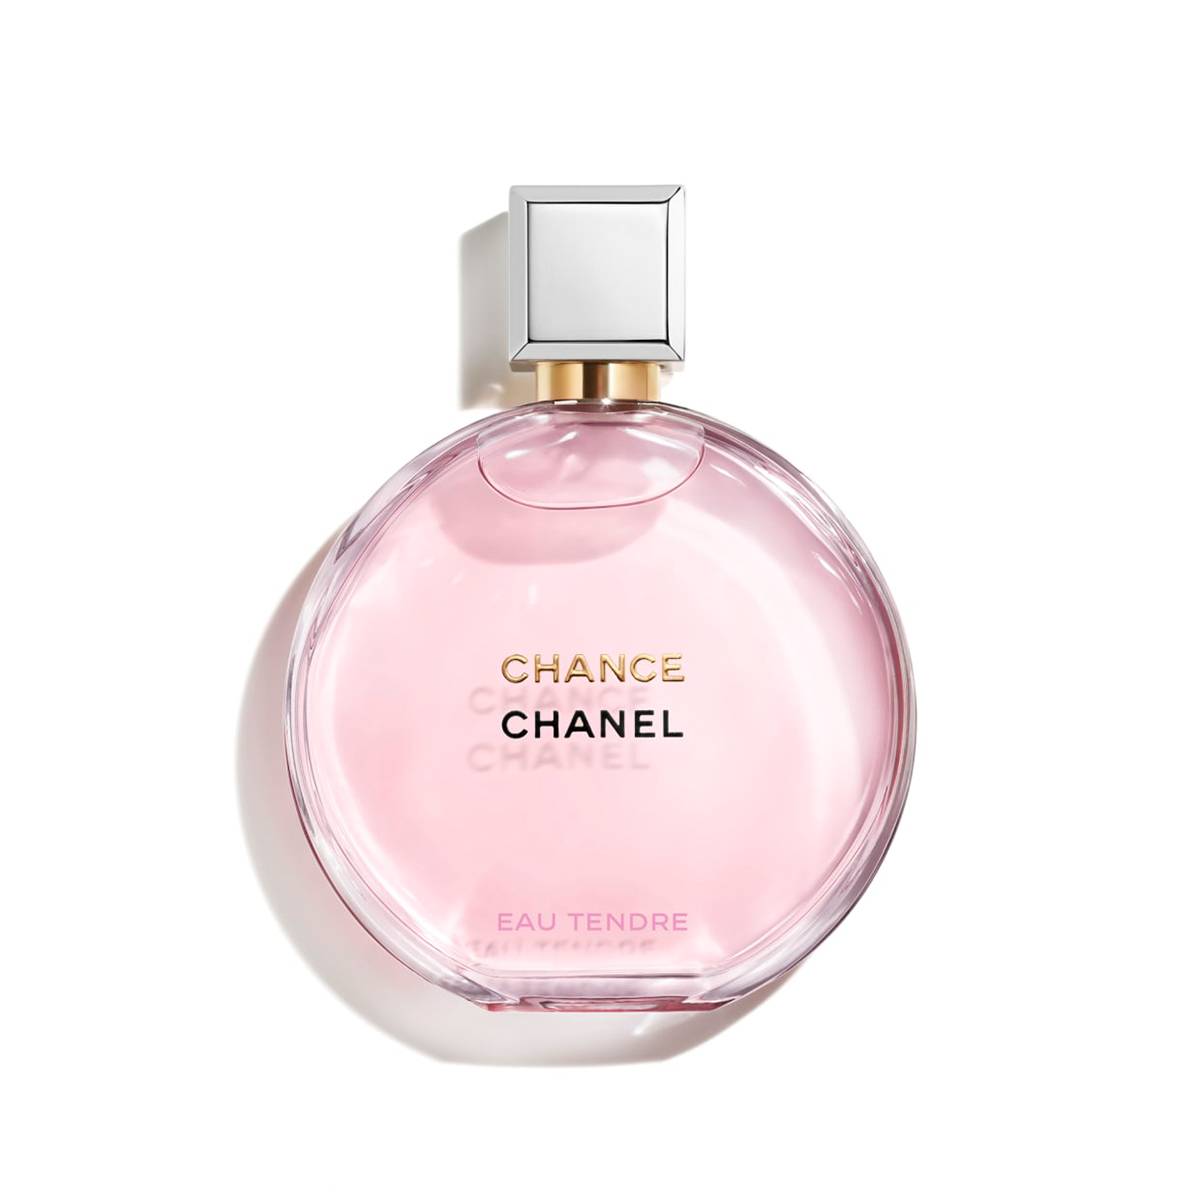  Chanel Chance Eau Tendre ima nežnu notu koja pristaje svima. 